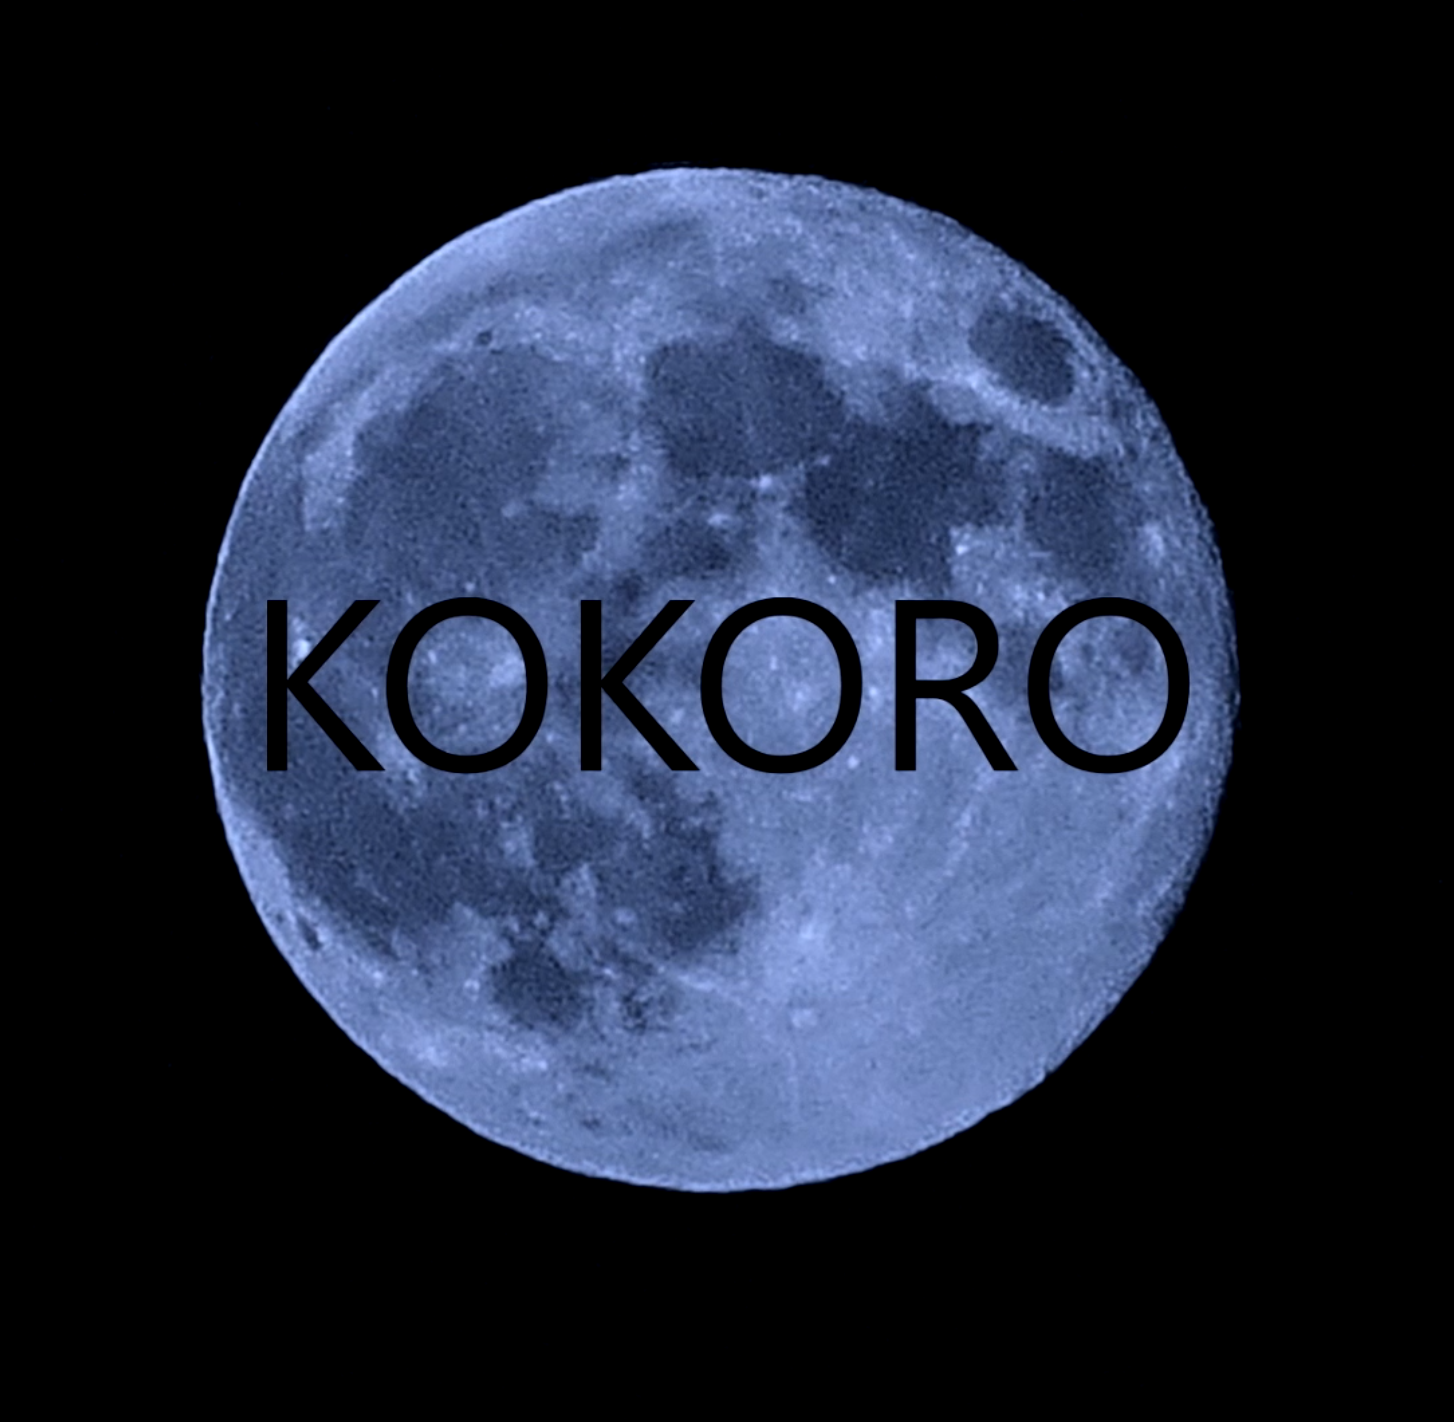 kokoro - blue moon trlilogy